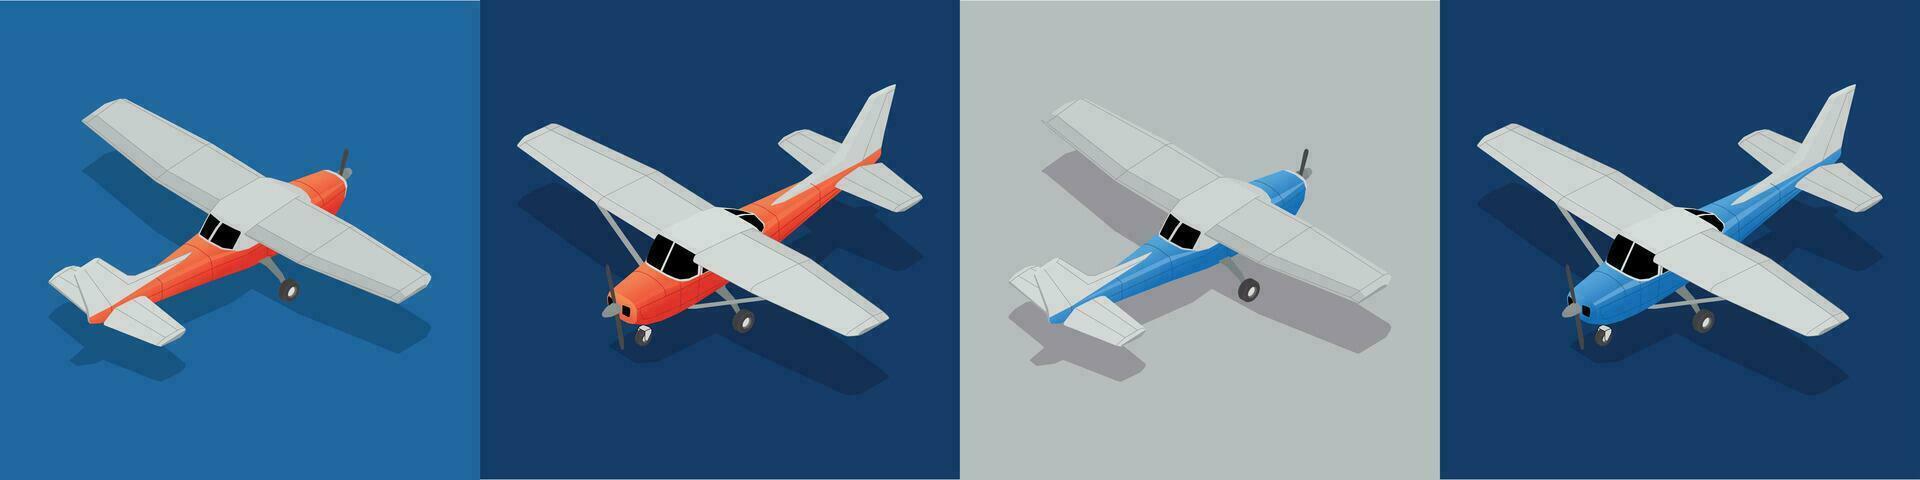 aviões quadrado composições conjunto vetor